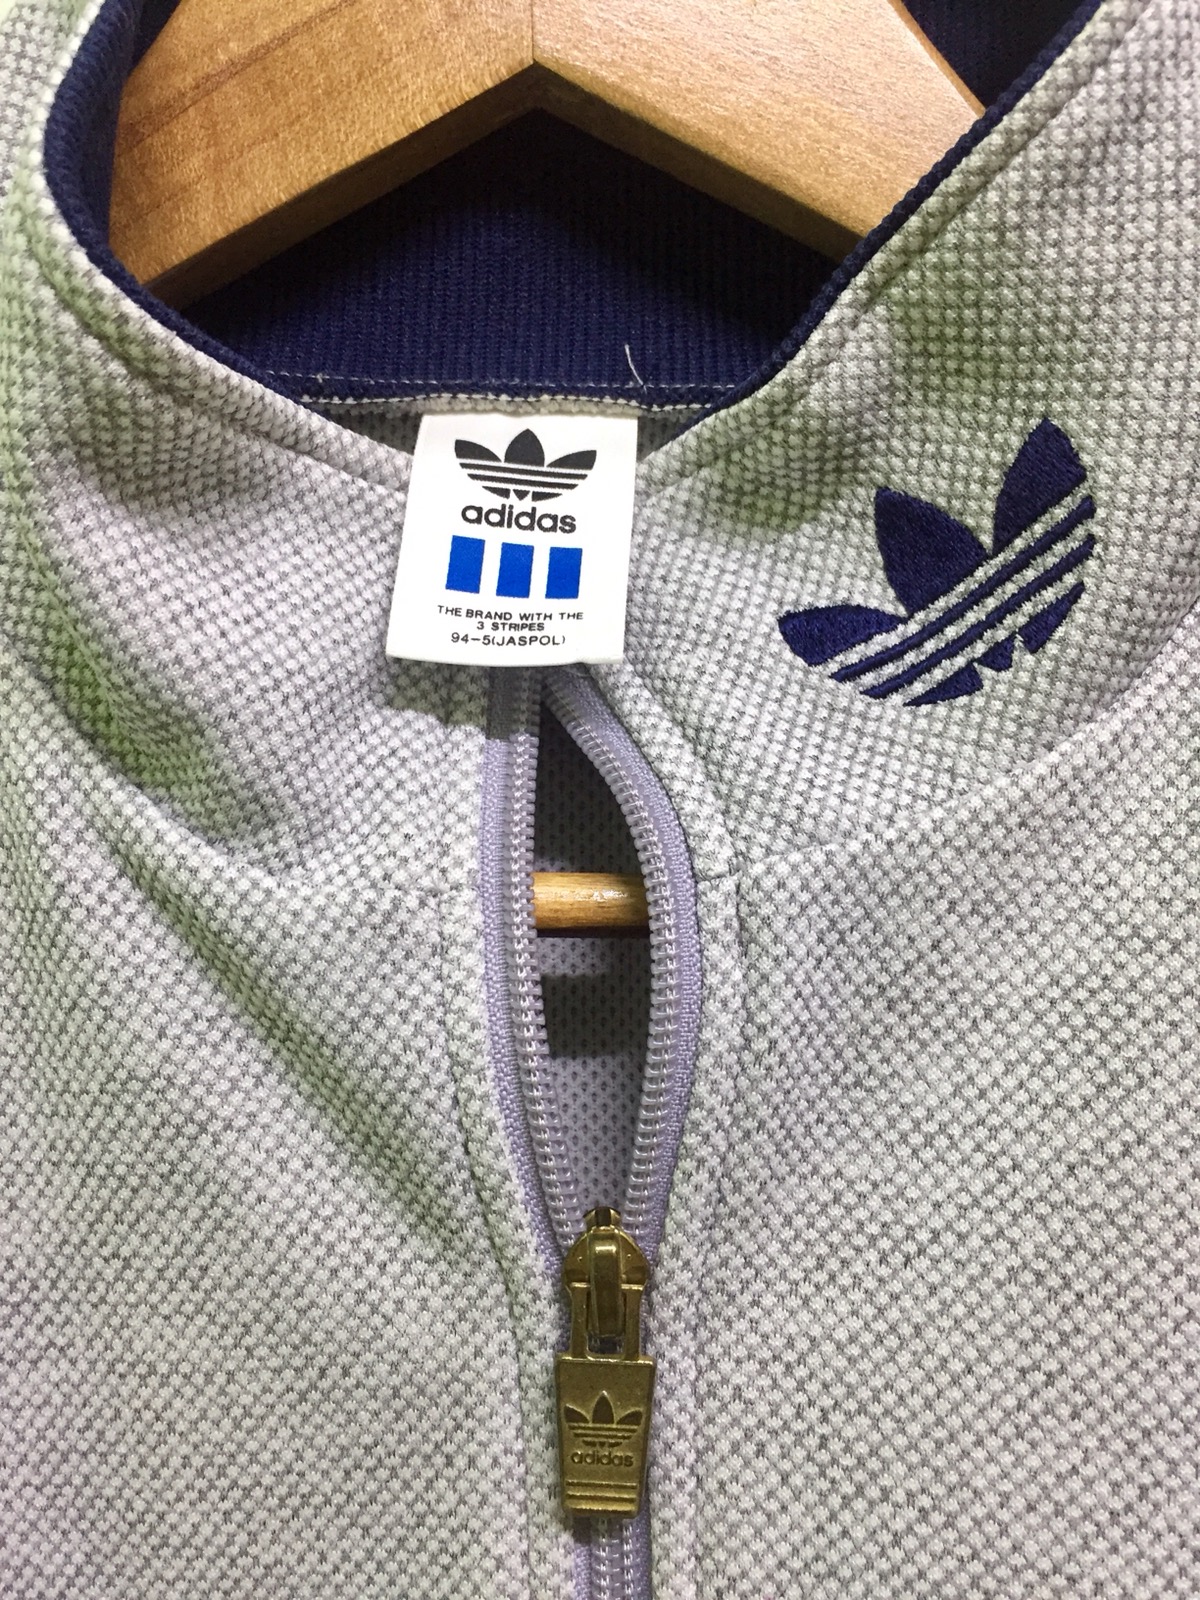 90s Adidas Originals Brand With The 3 Stripe Logo Design - 5